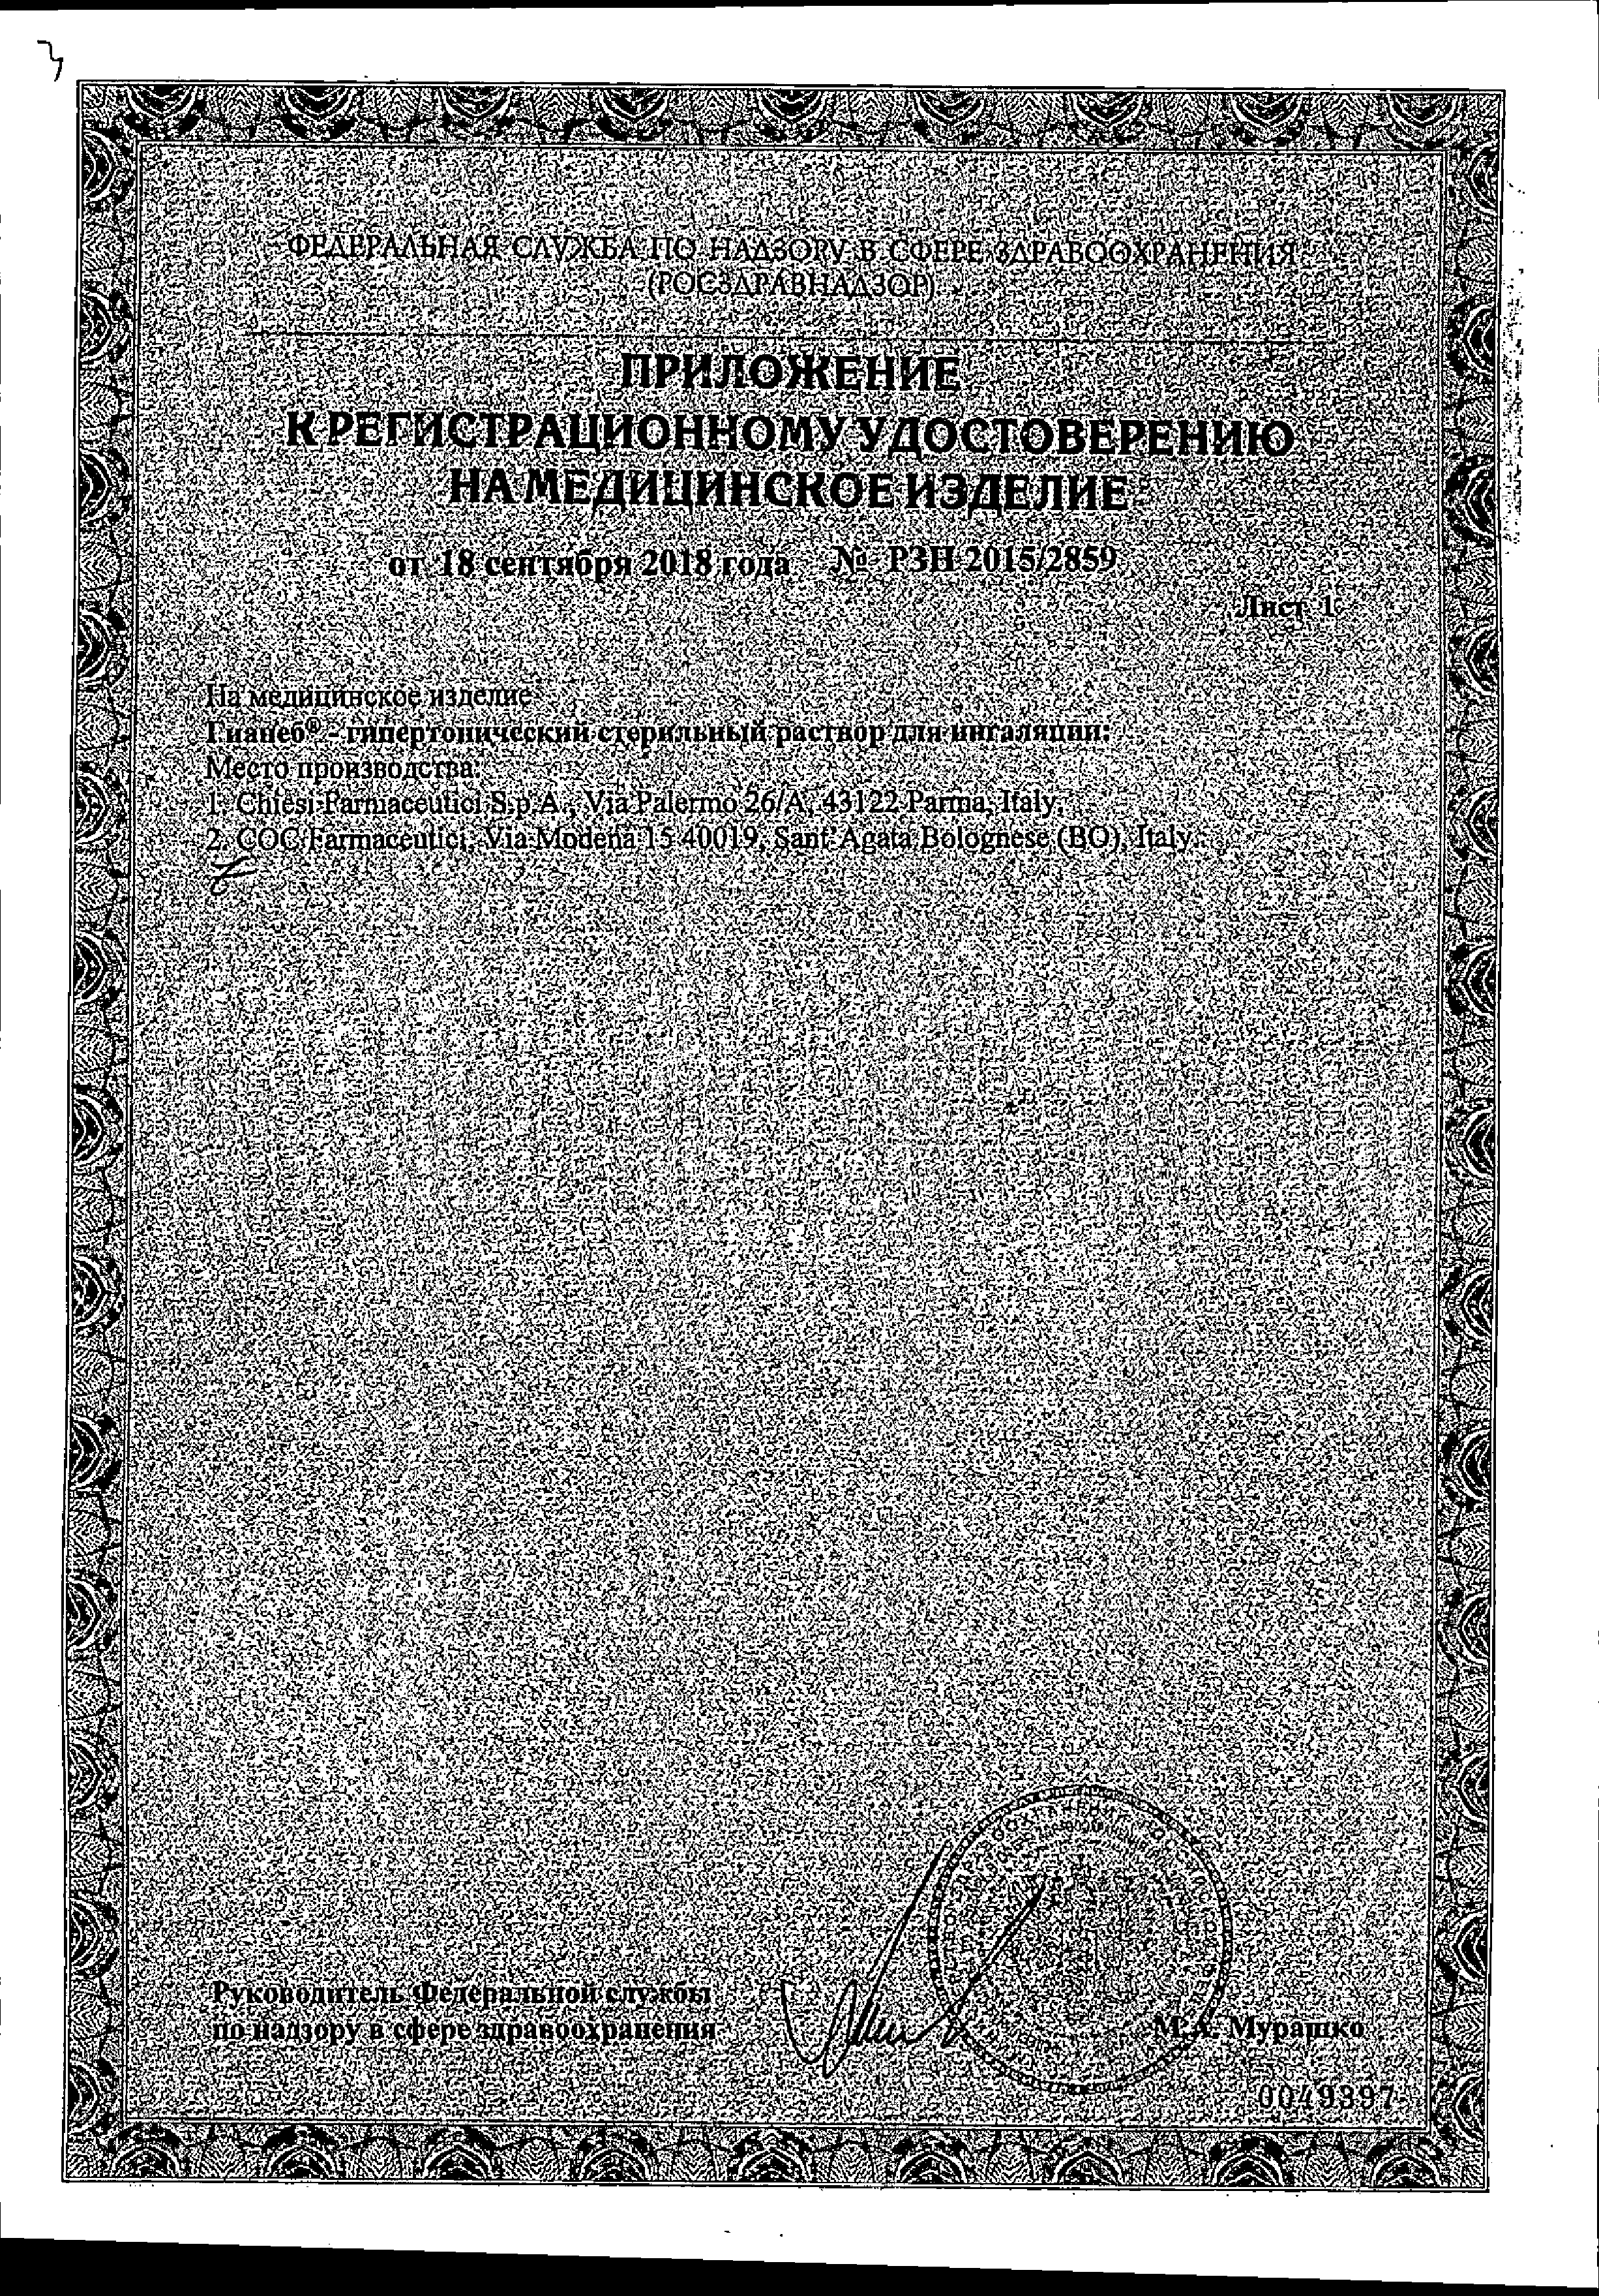 Гианеб сертификат